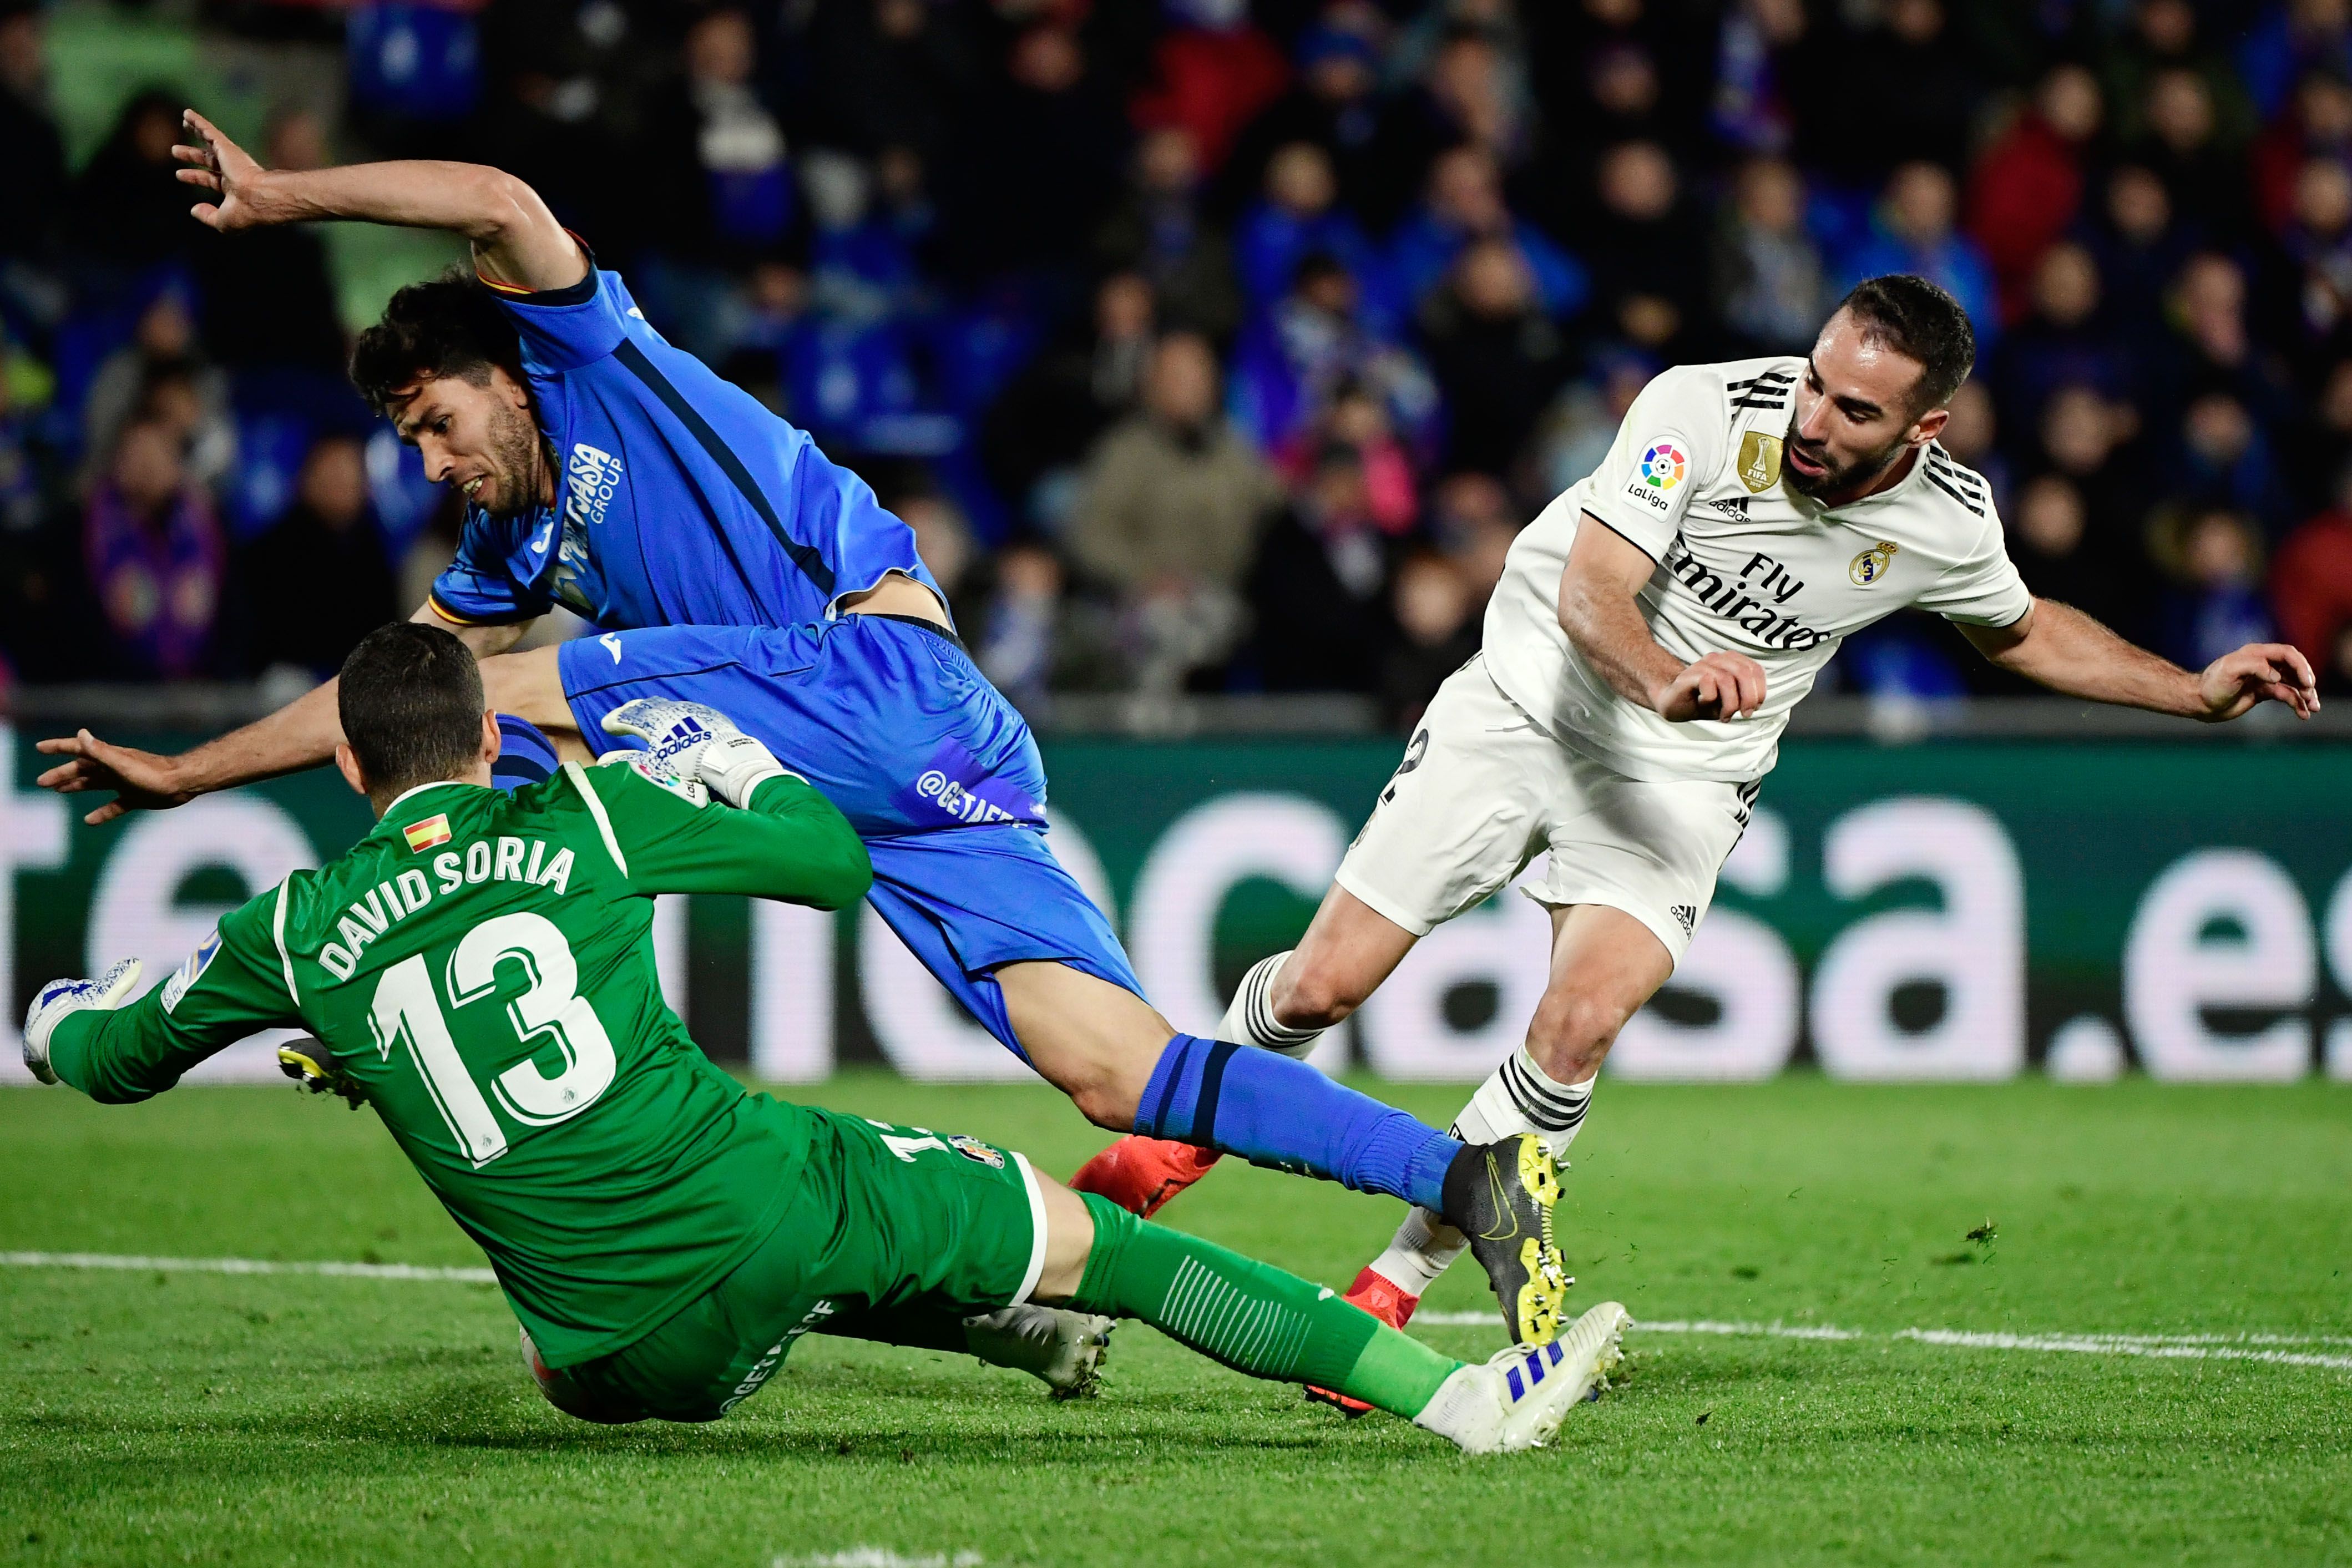 El Real Madrid no pudo romper el muro defensivo de Getafe y se conformó con un empate. (Foto Prensa Libre: AFP)